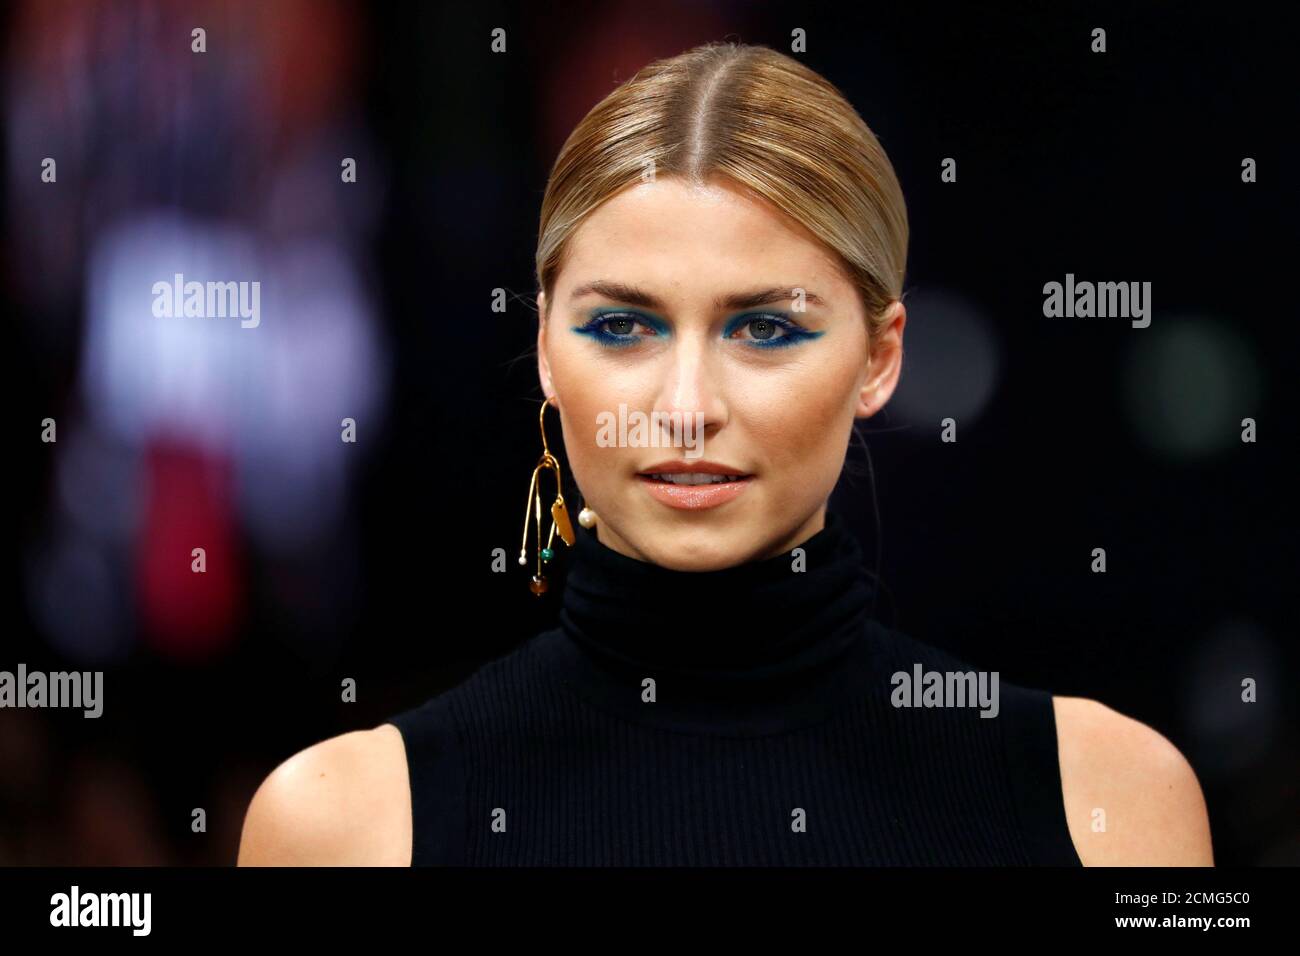 Modelo Lena Gercke presenta una creación de maquillaje por Maybelline New  York durante la Semana de la Moda de Berlín Otoño/Invierno 2019/20 en  Berlín, Alemania, 17 de enero de 2019. REUTERS/Fabrizio Bensch